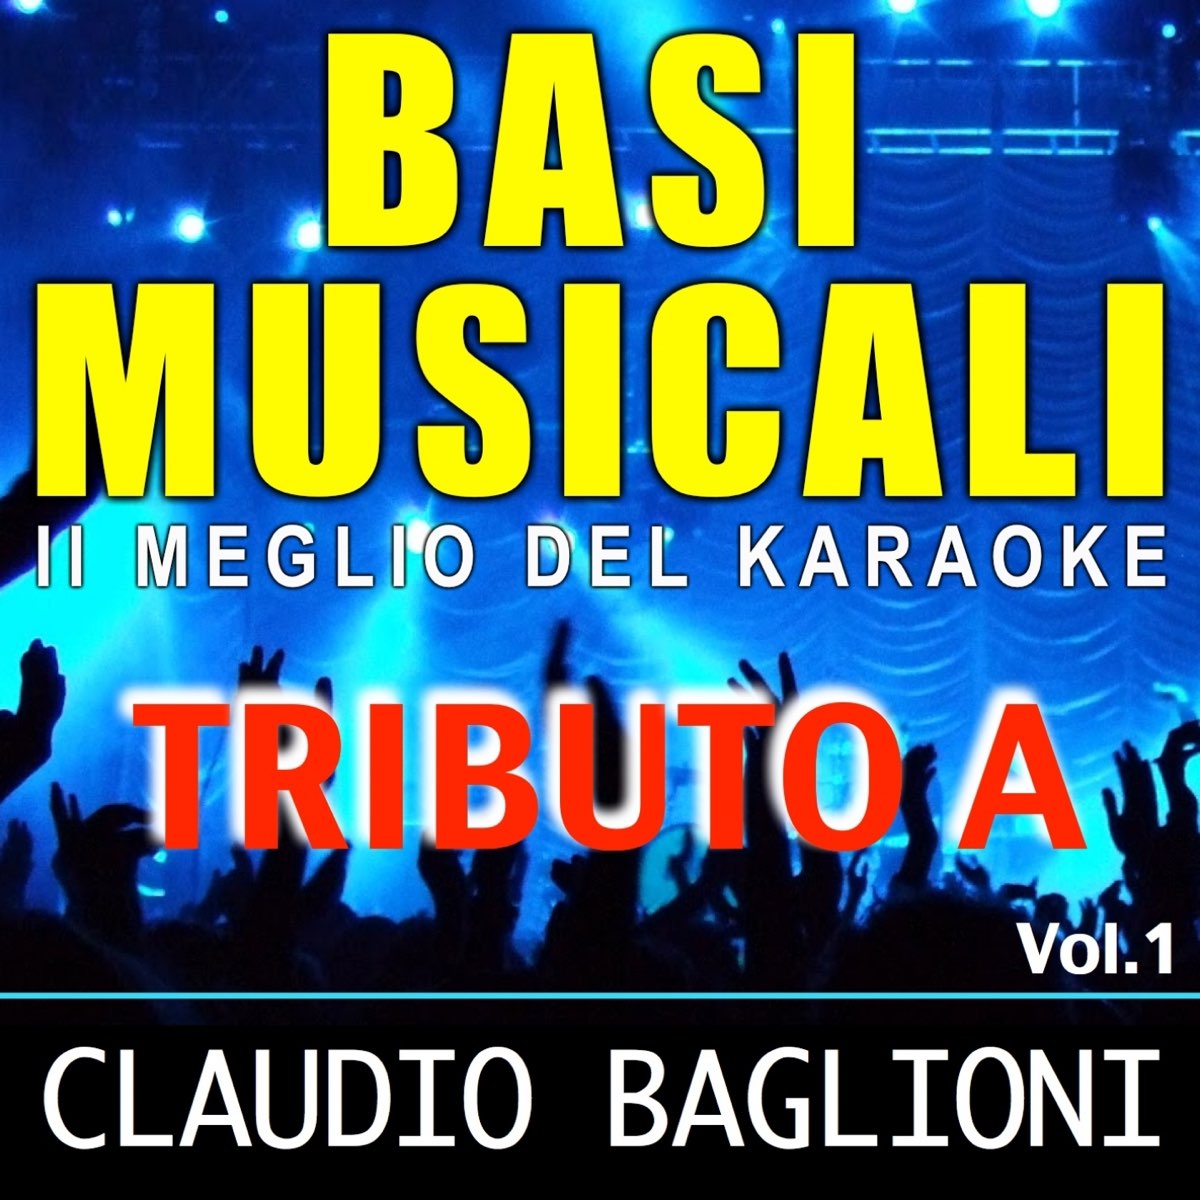 Basi musicali: Tributo a Claudio Baglioni, Vol. 1 (Il meglio del karaoke) -  Album by Viganò Brothers - Apple Music